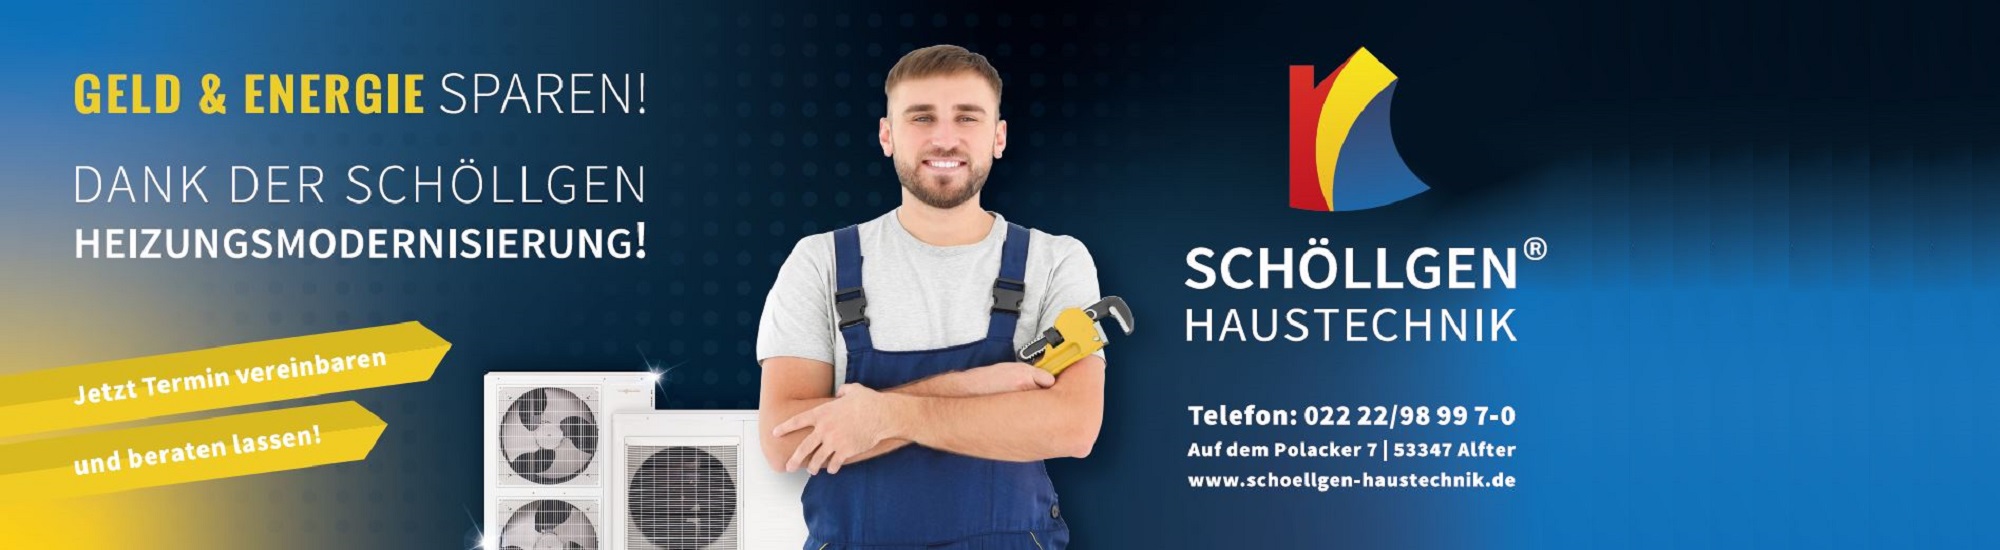 Schöllgen Haustechnik GmbH